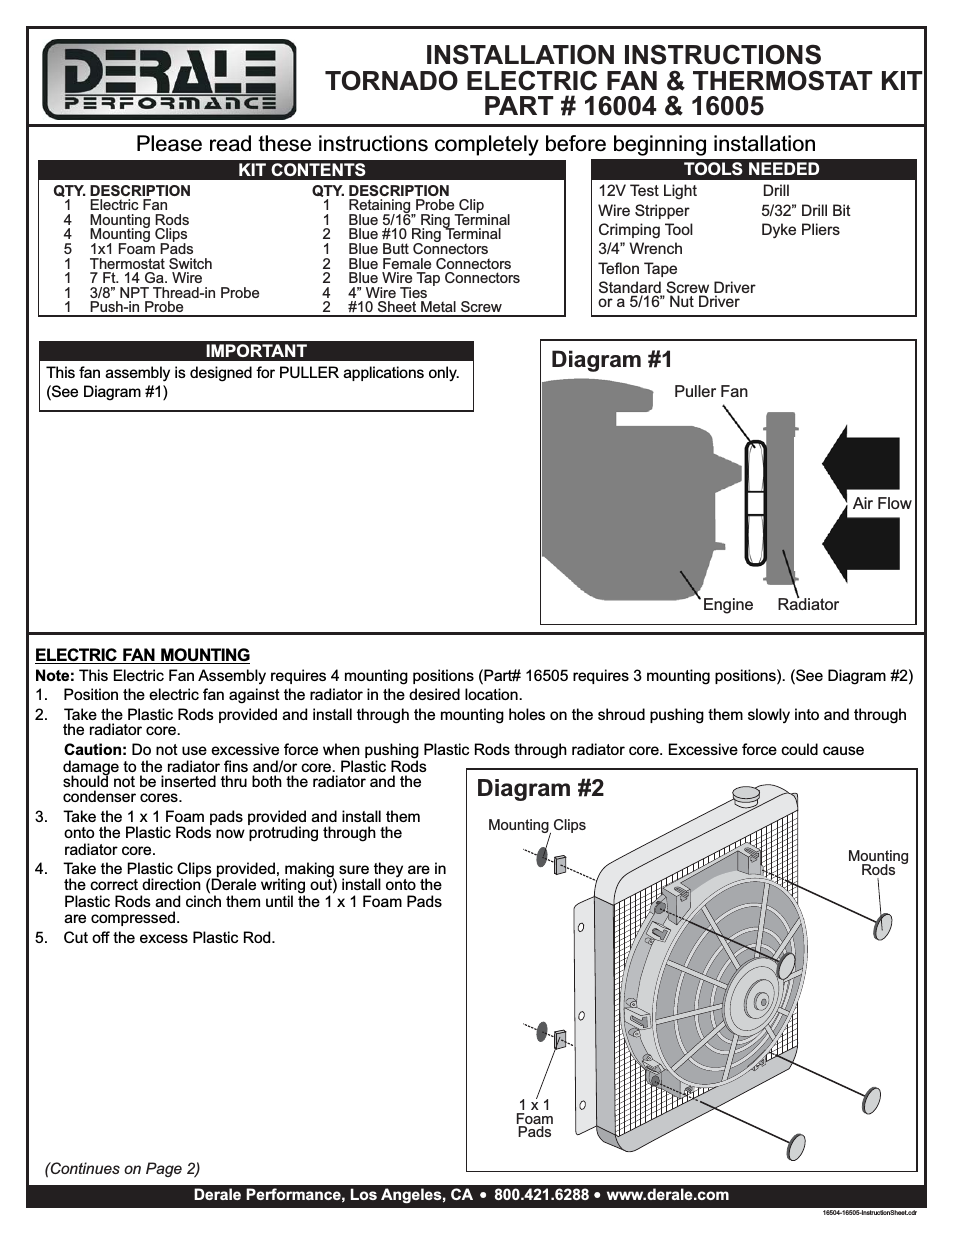 Tornado Electric Fan & Thermostat Kit